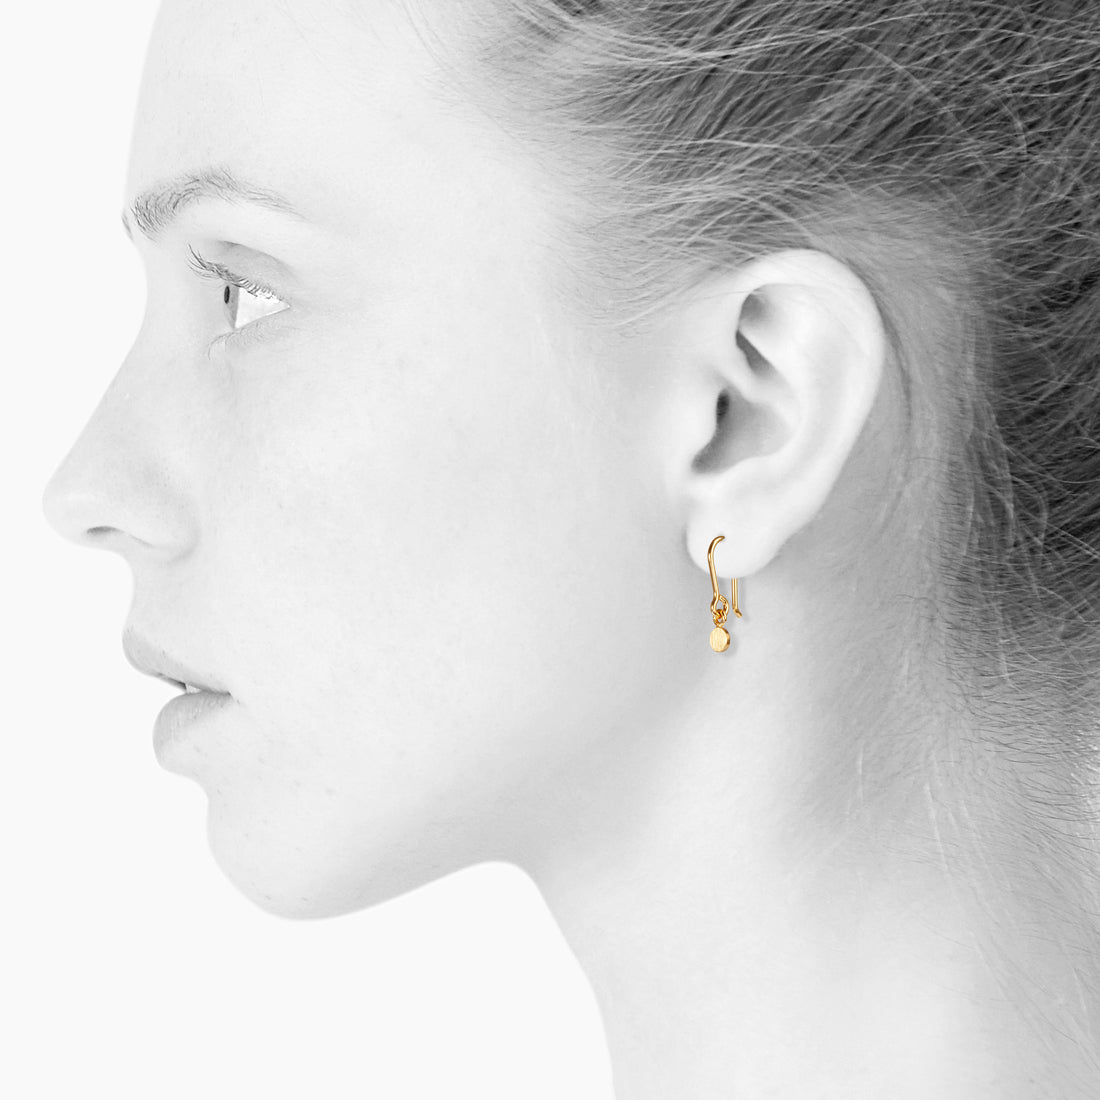 SPOT tiny ørekrog - GOLD - SCHERNING smykker